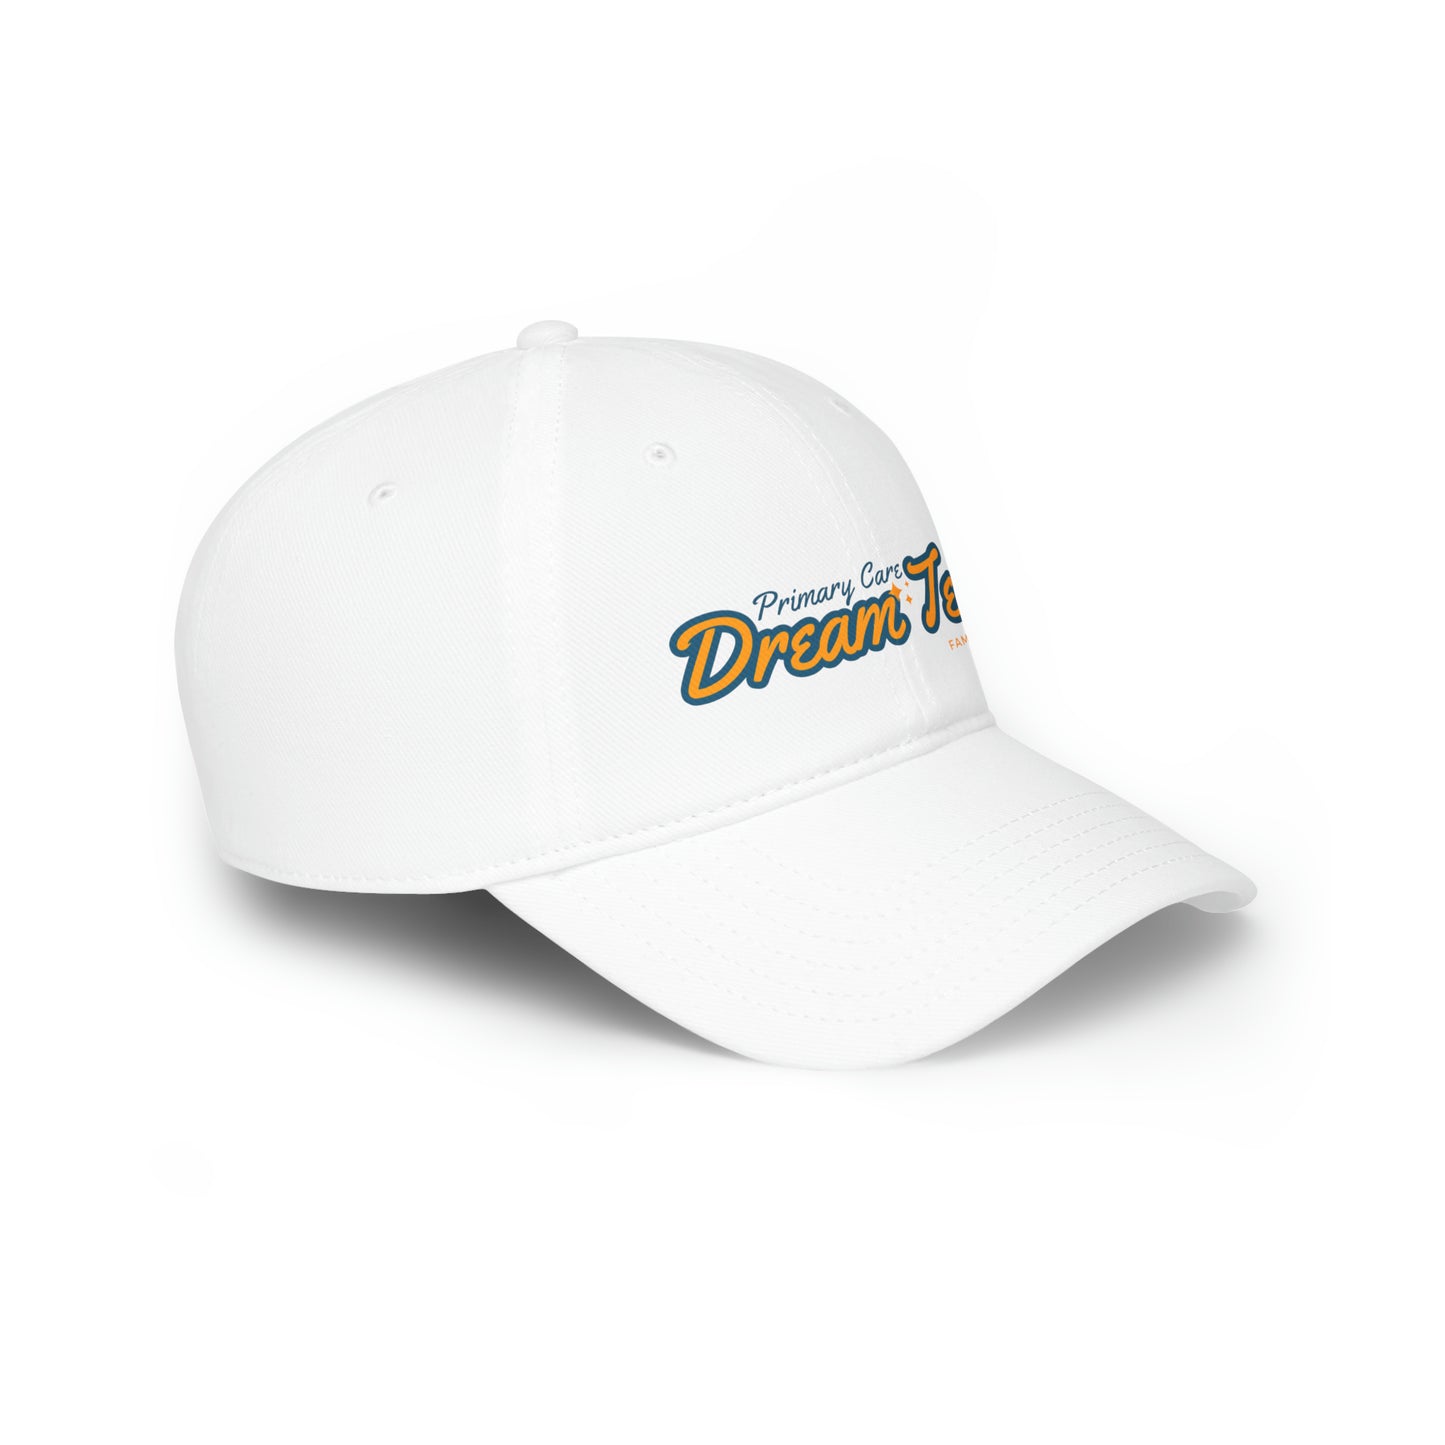 Primary Care Dream Team - Low Profile Baseball Cap